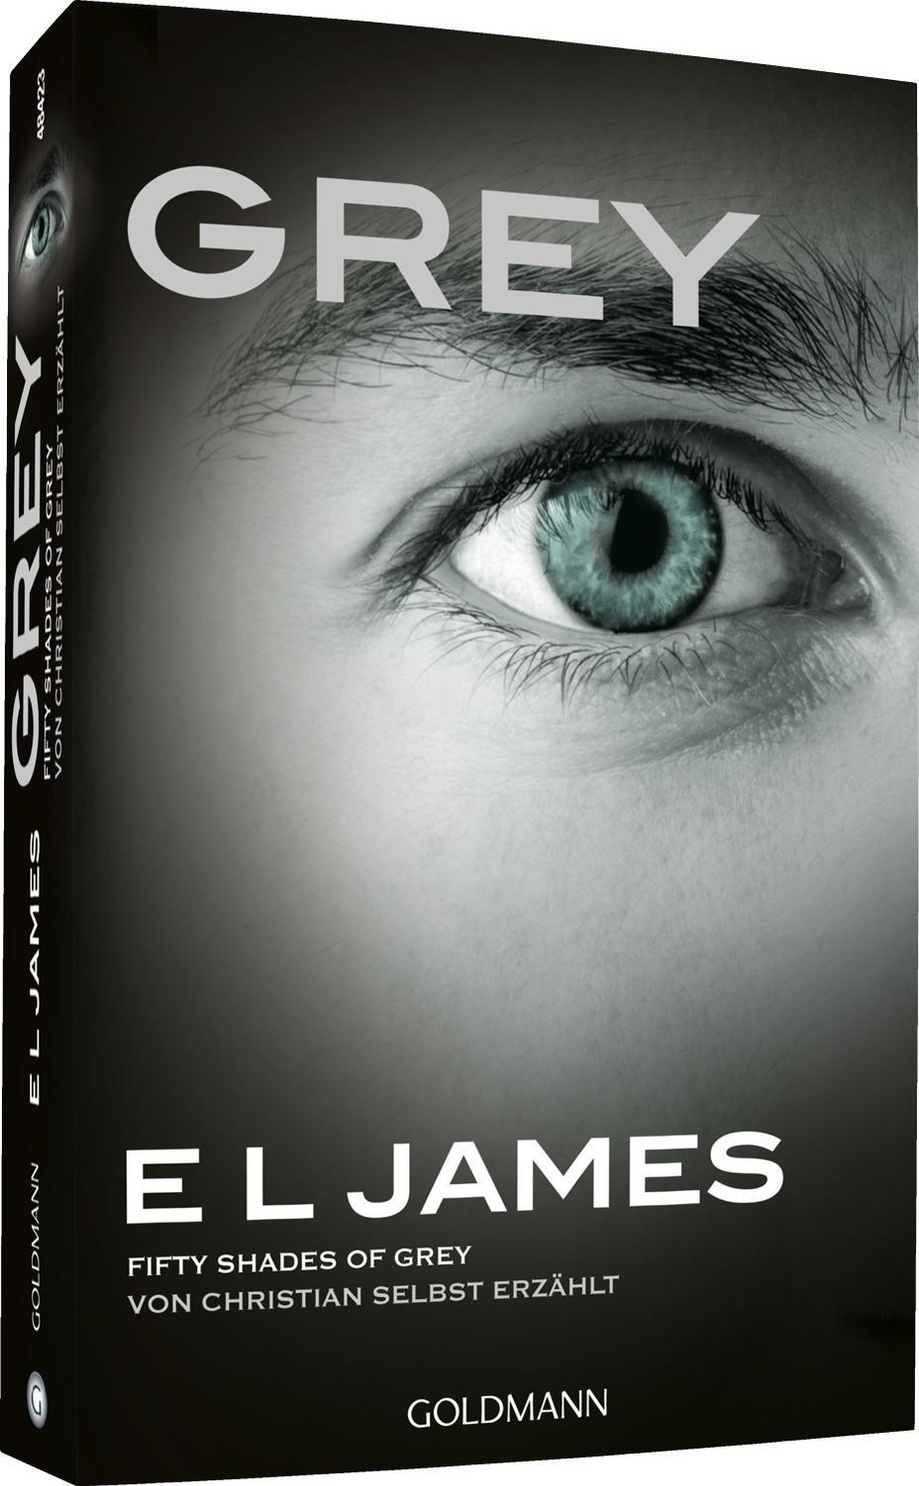 Grey Fifty Shades Of Grey Von Christian Selbst Erzahlt Grey Bd 1 Buch